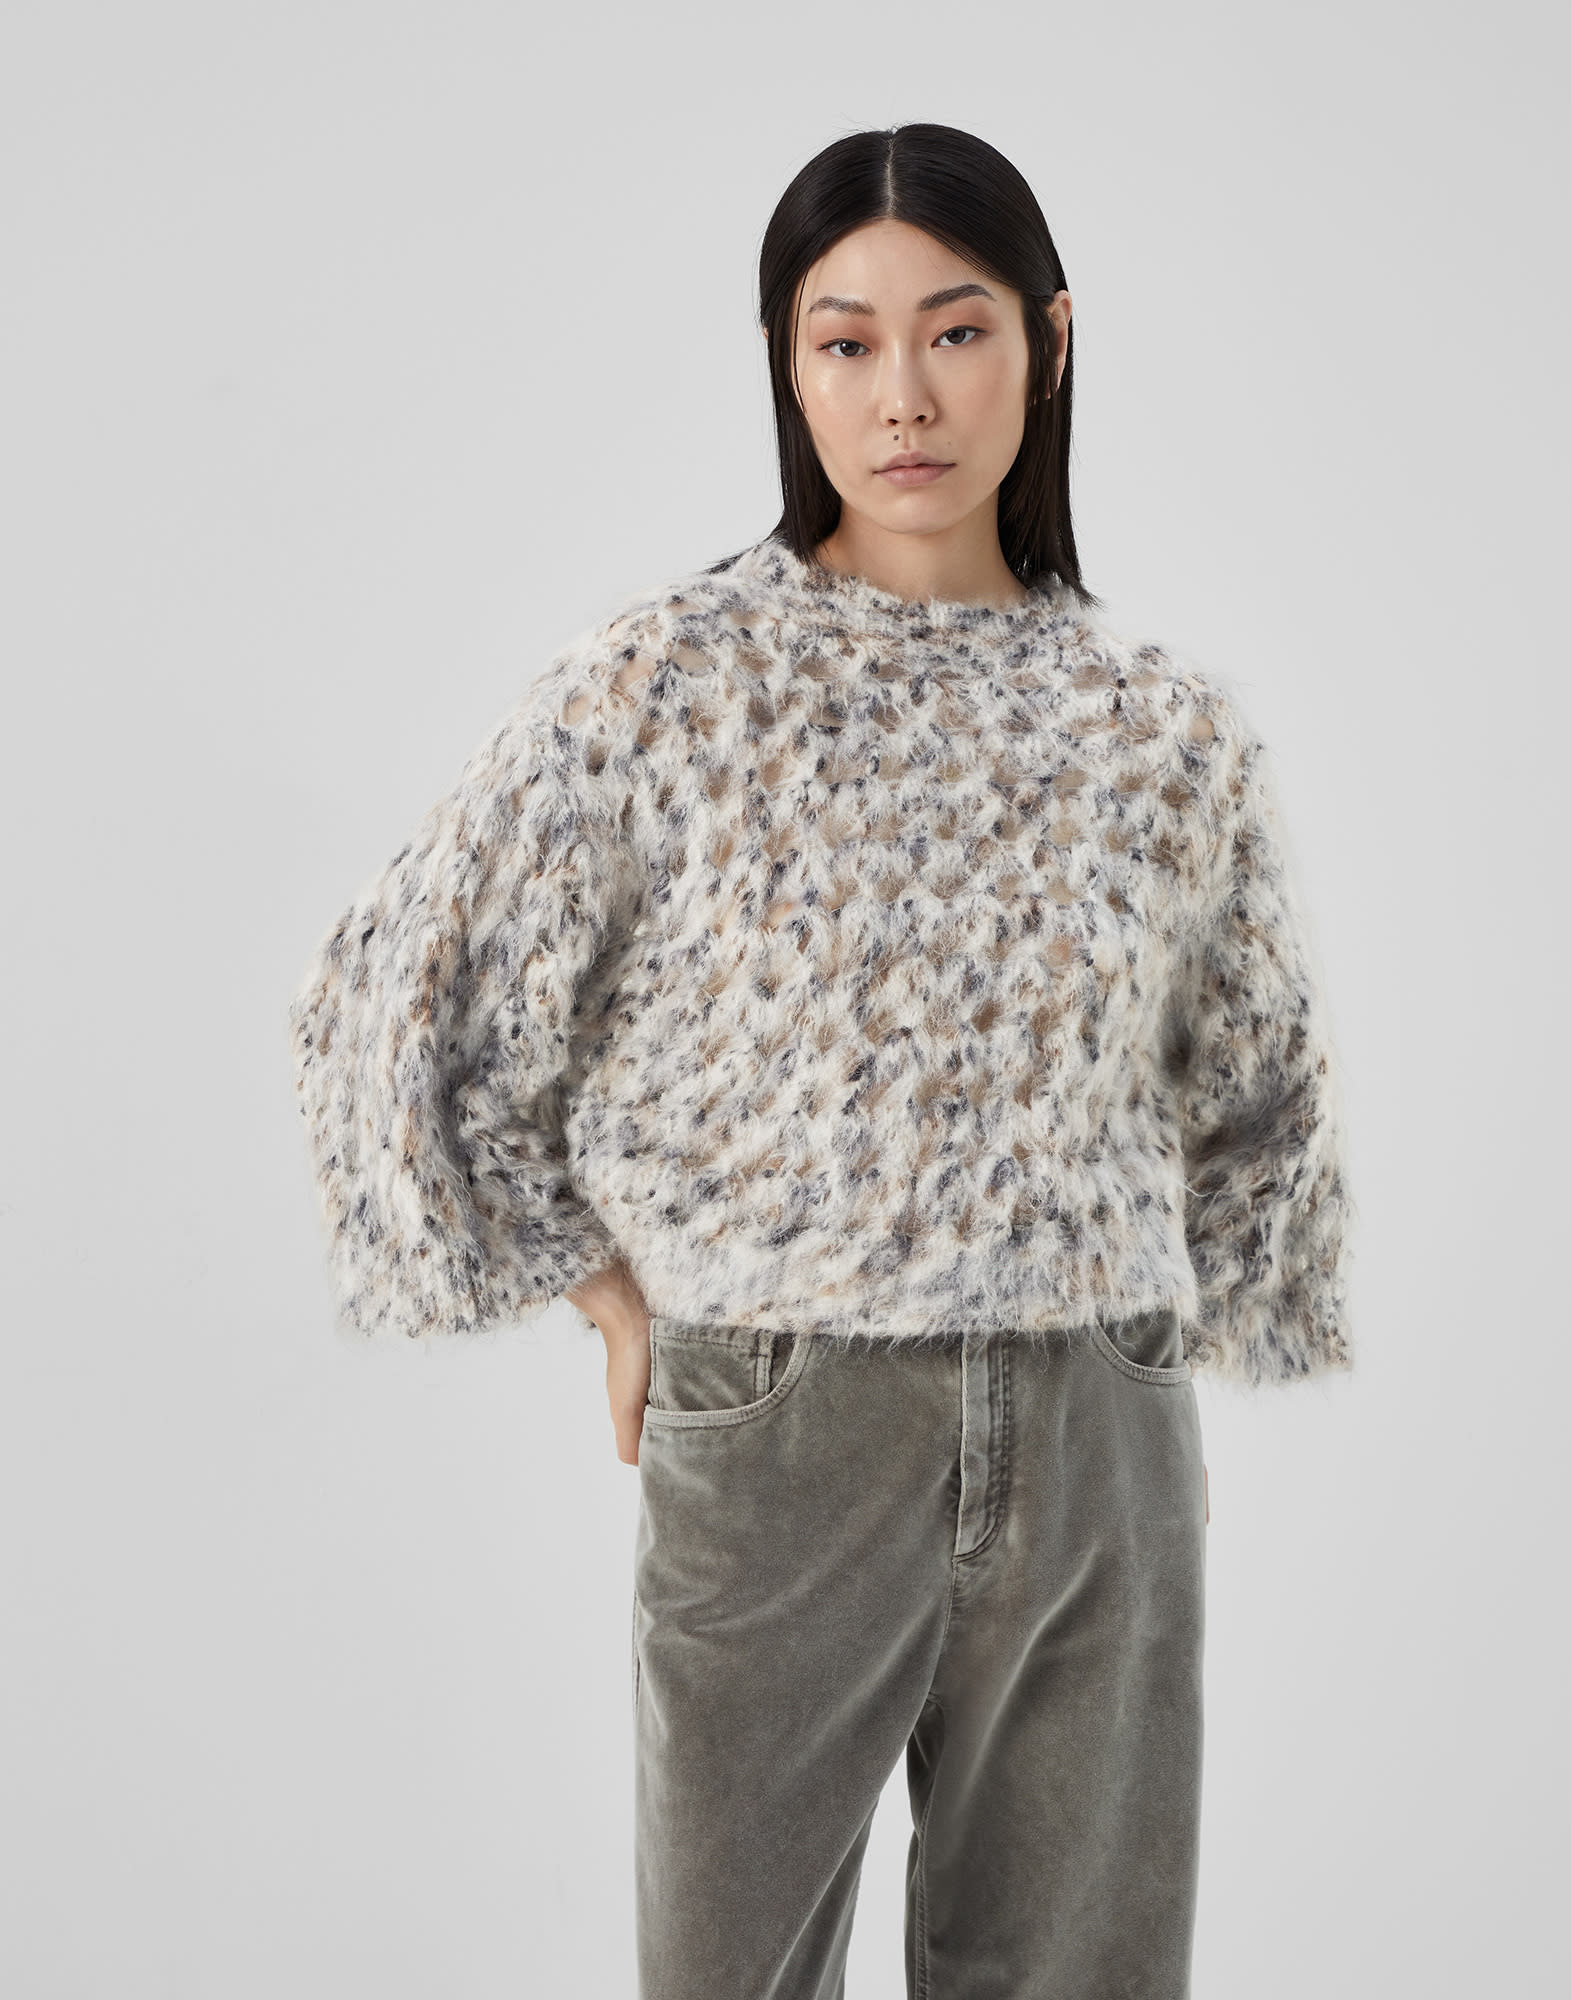 马海毛、羊毛和棉混纺针织衫